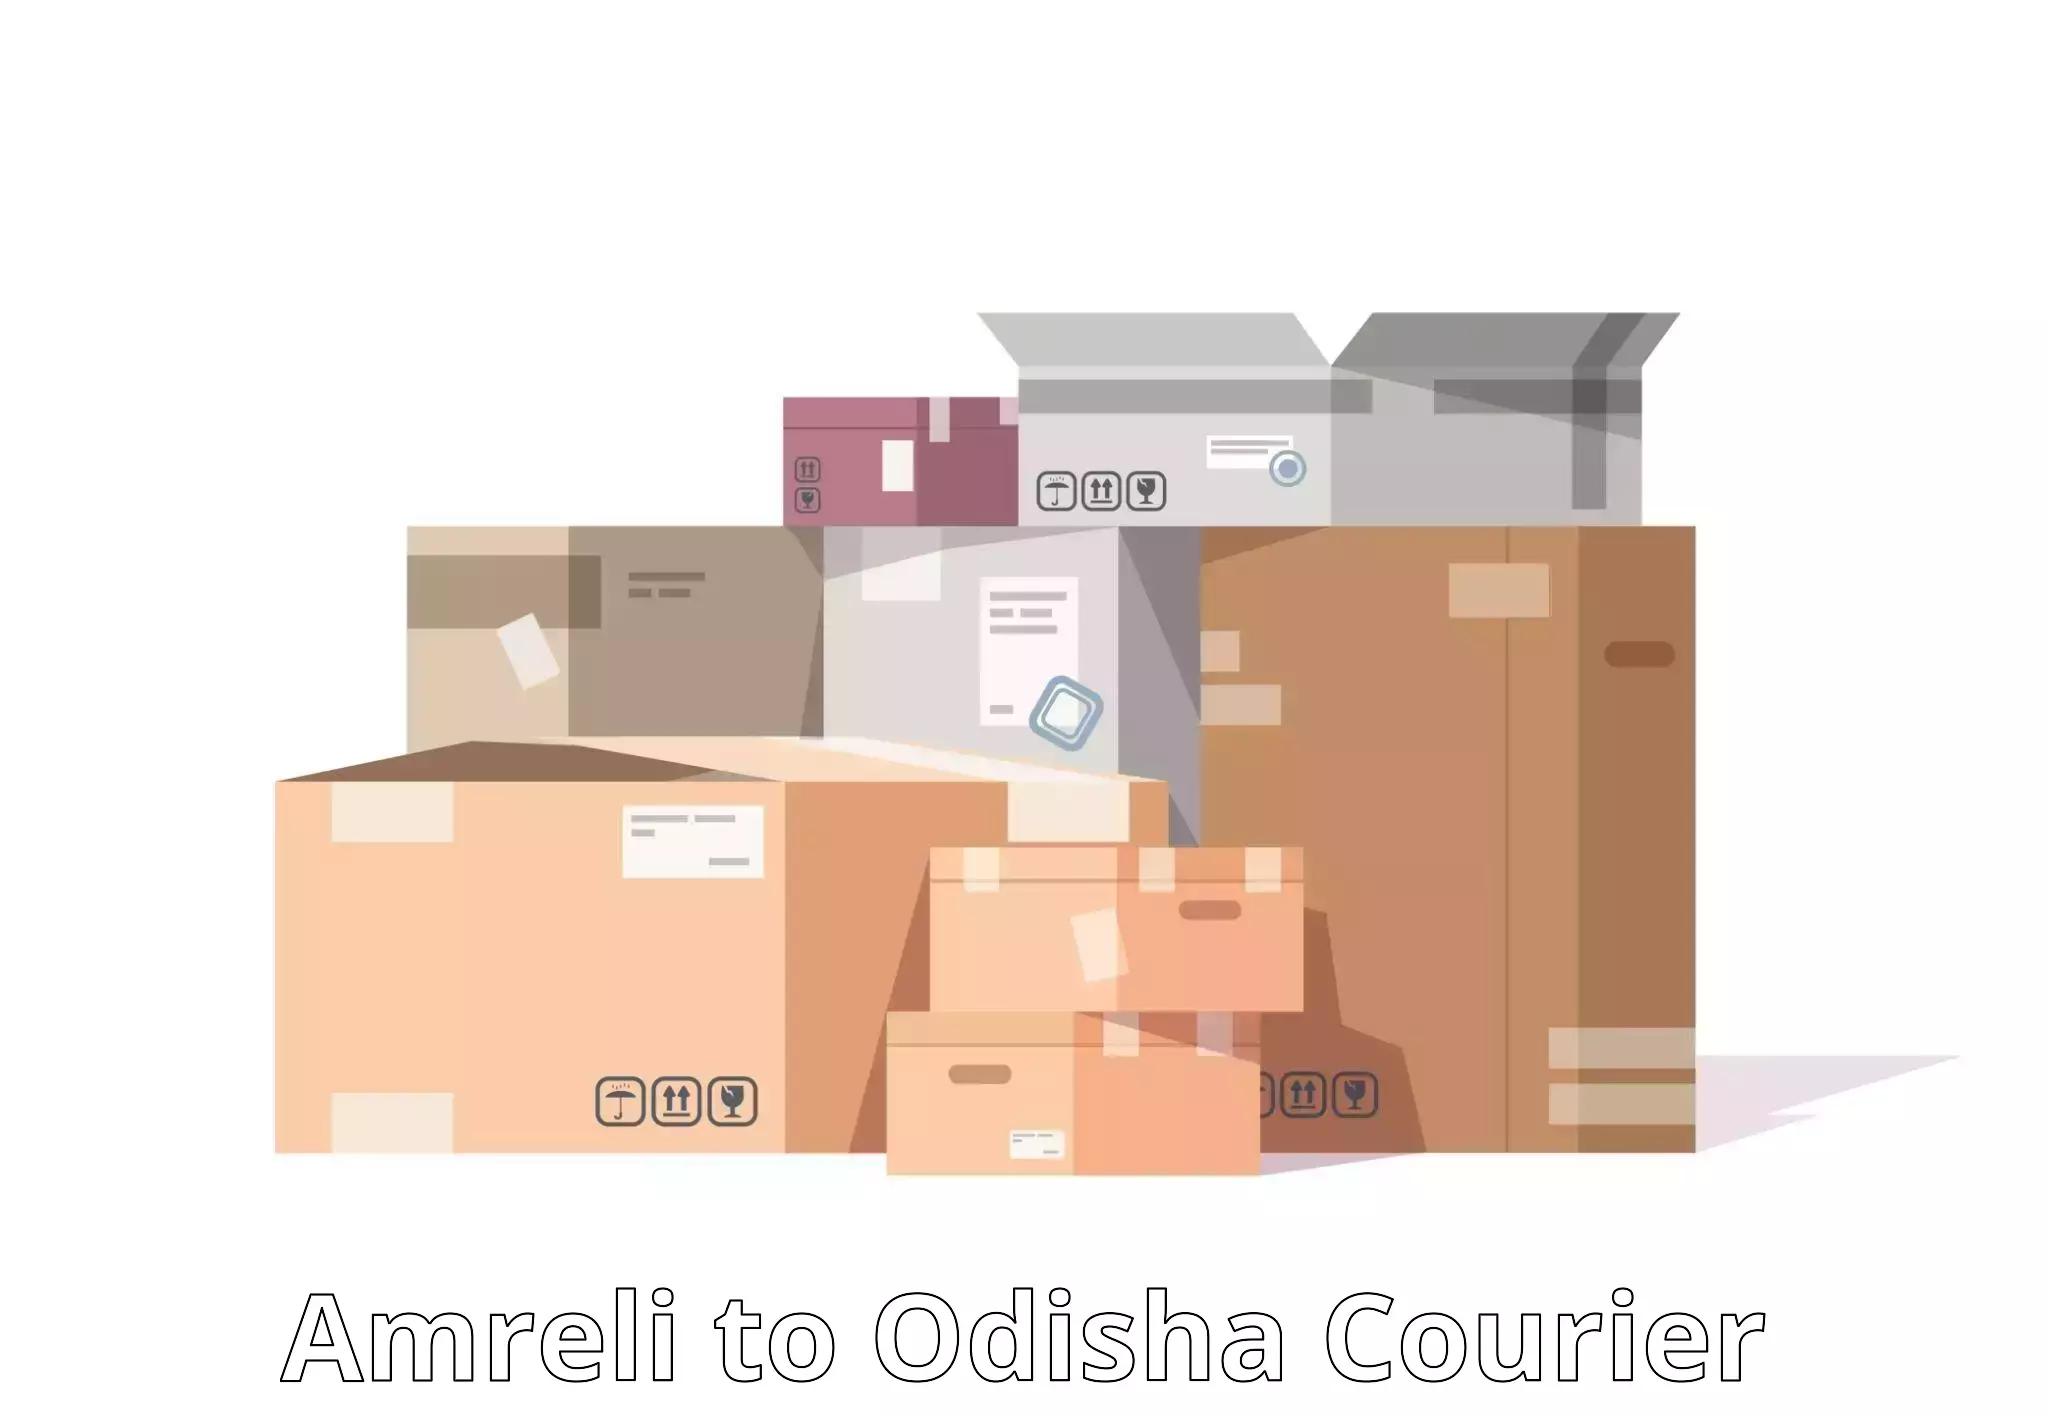 Speedy delivery service Amreli to Odisha